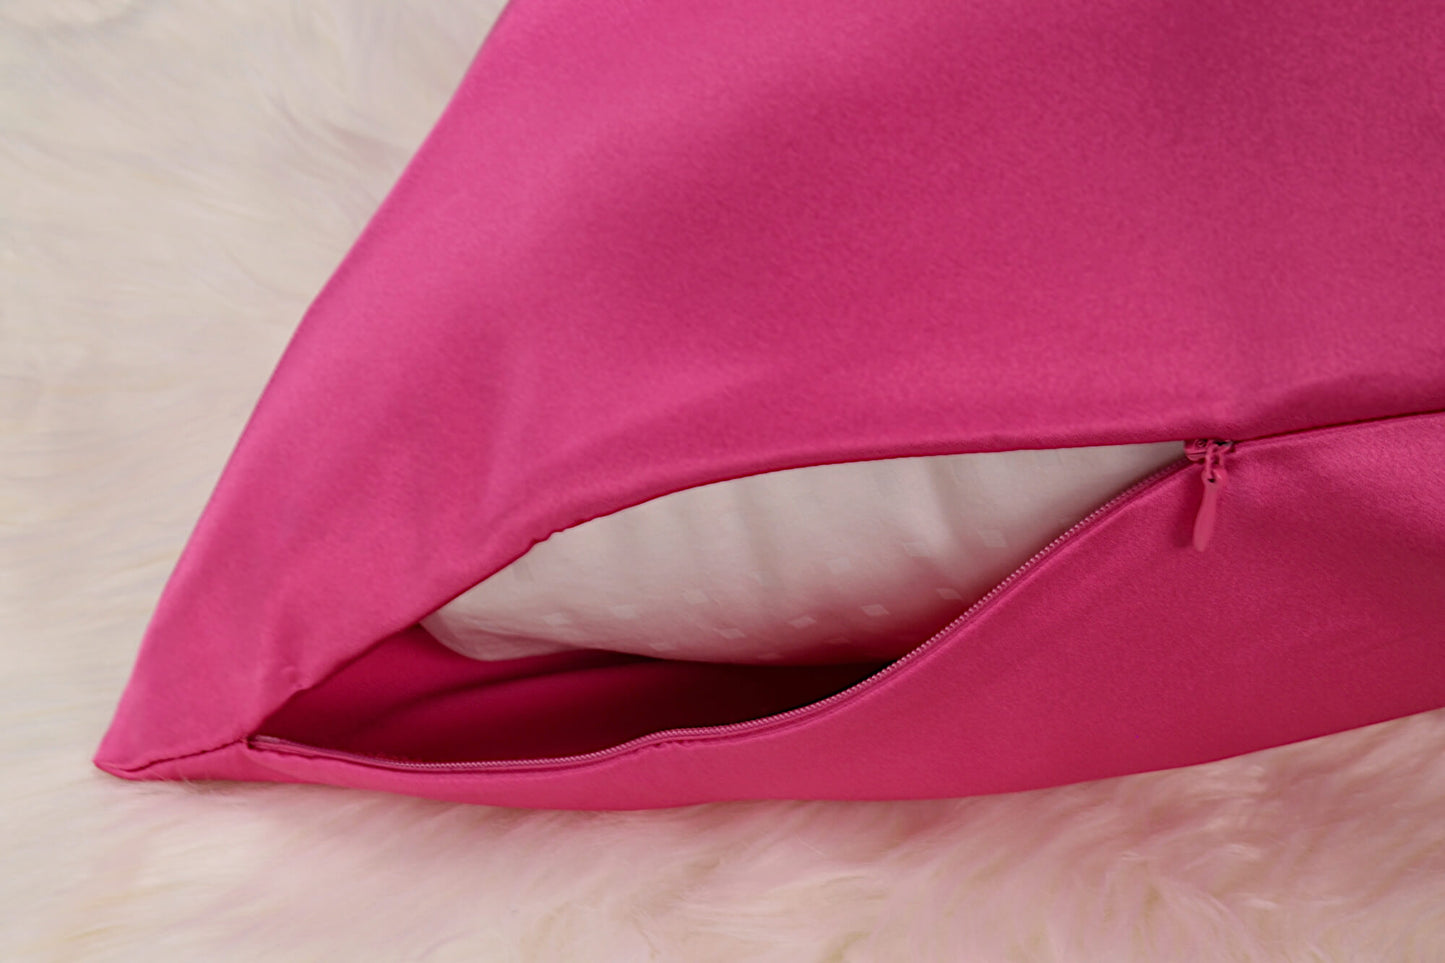 Celestial Silk hot pink silk pillowcase with hidden zipper